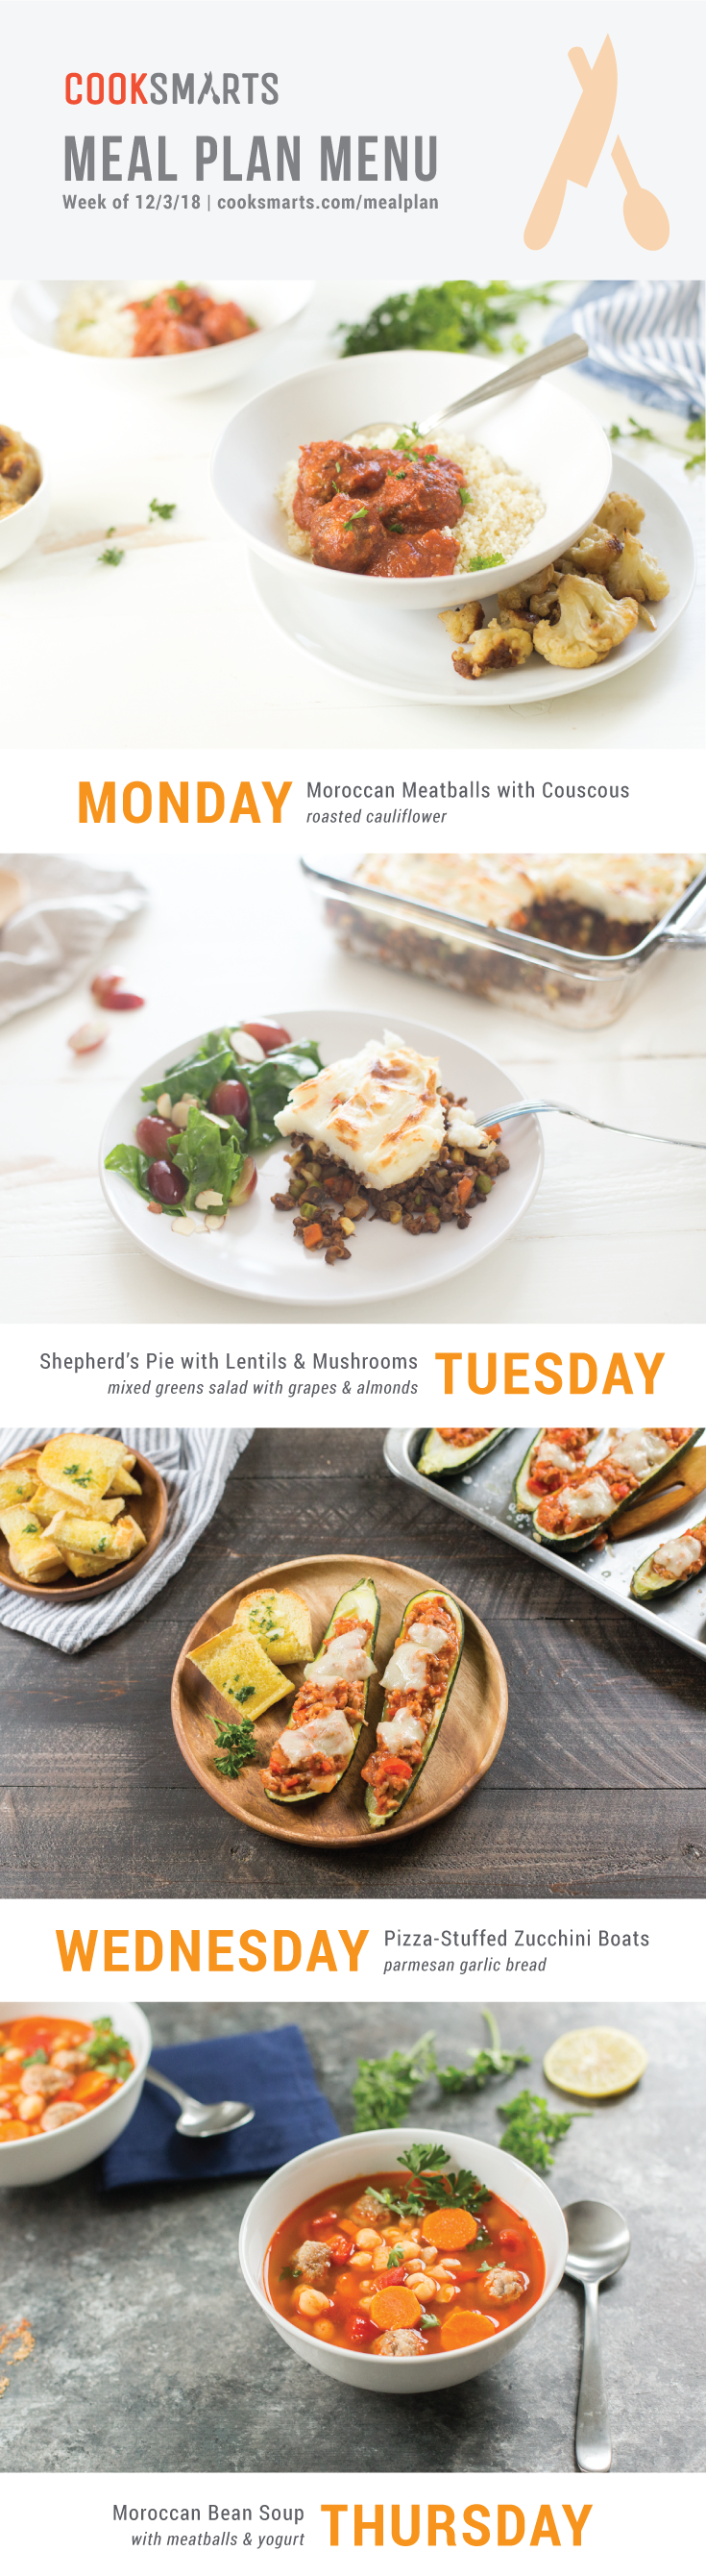 Weekly Meal Planner | Menu for Week of 12/3/18 via Cook Smarts